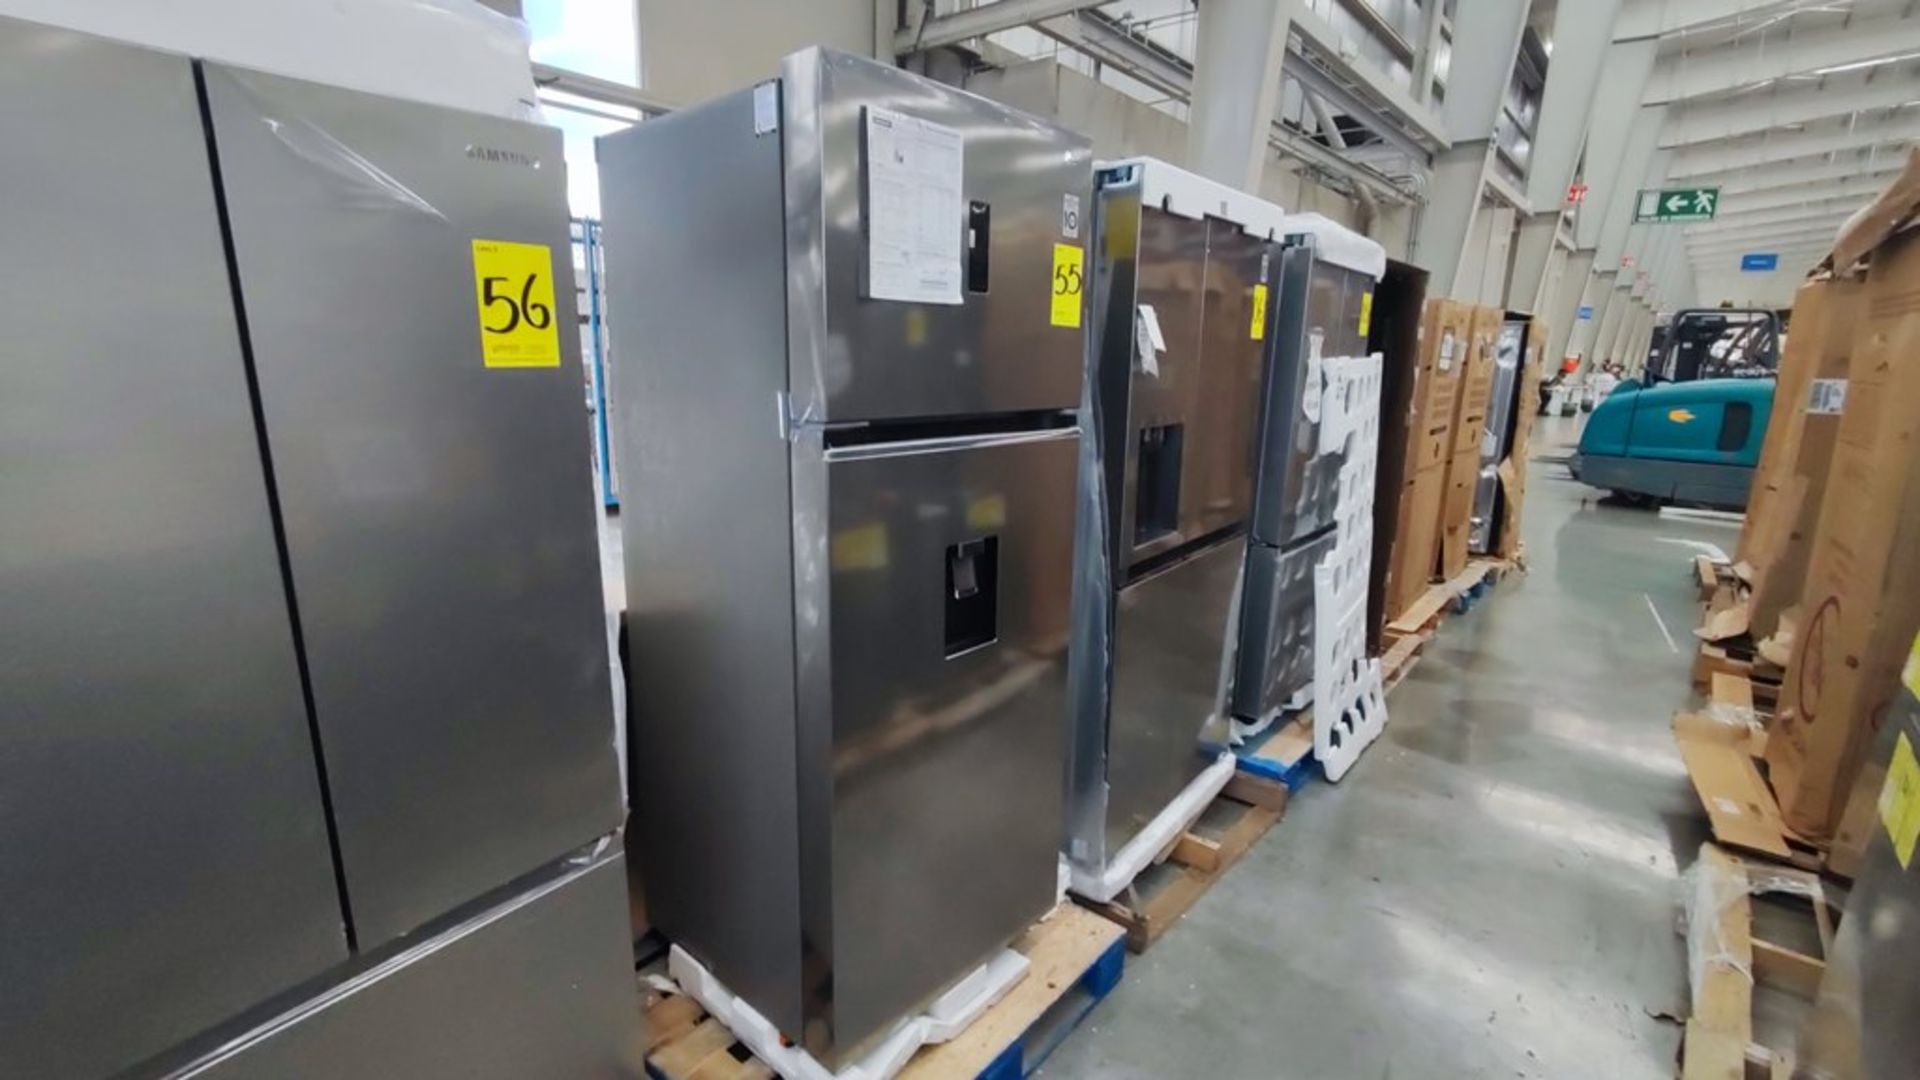 1 Refrigerador Marca LG, ModeloVT40AWP , Serie 202MRHP00649, Color Gris, Favor de inspeccionar. (No - Image 6 of 11